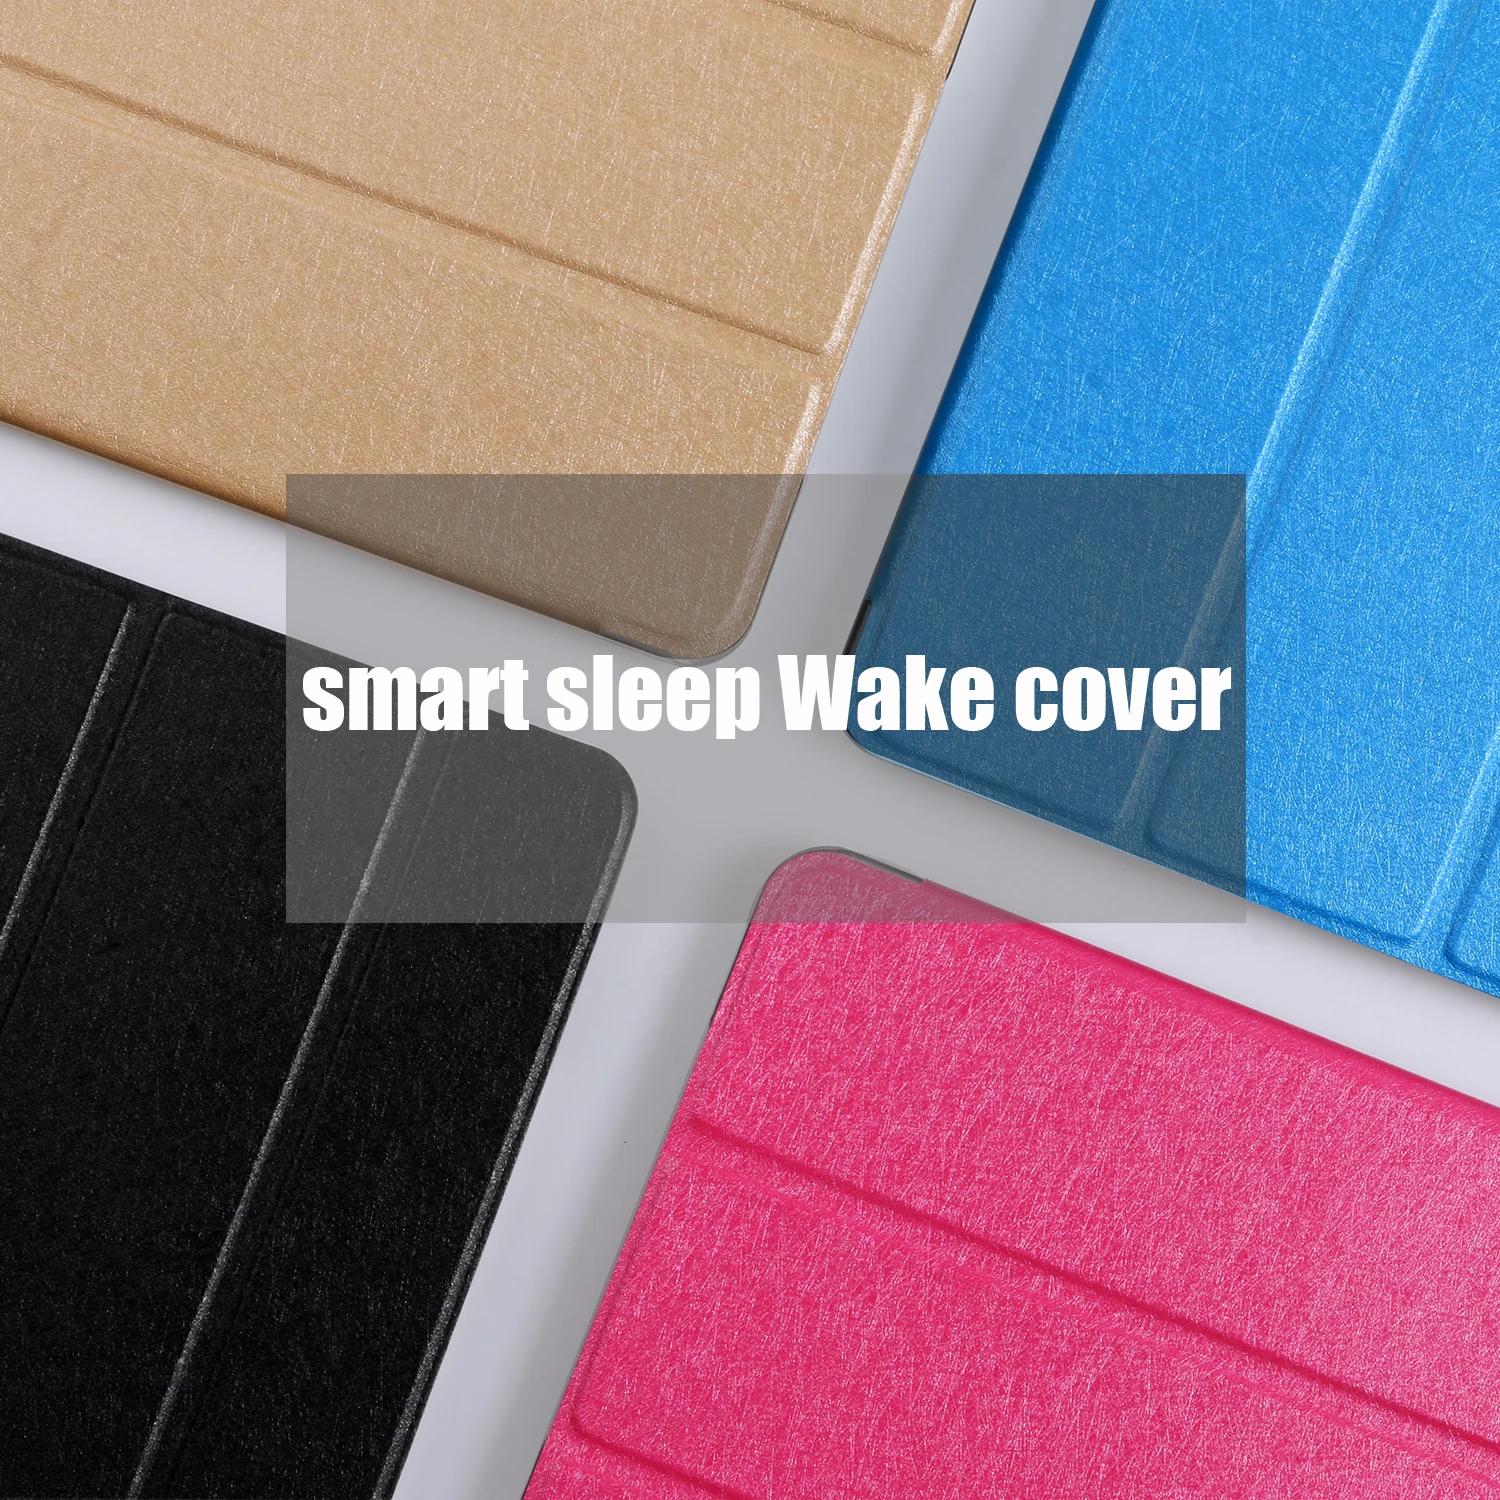 Чехол для планшета с откидывающейся крышкой для Samsung Galaxy Tab A 8,0() 8," Smart wake Sleep leather fundas чехол с подставкой capa для SM-T290/T295